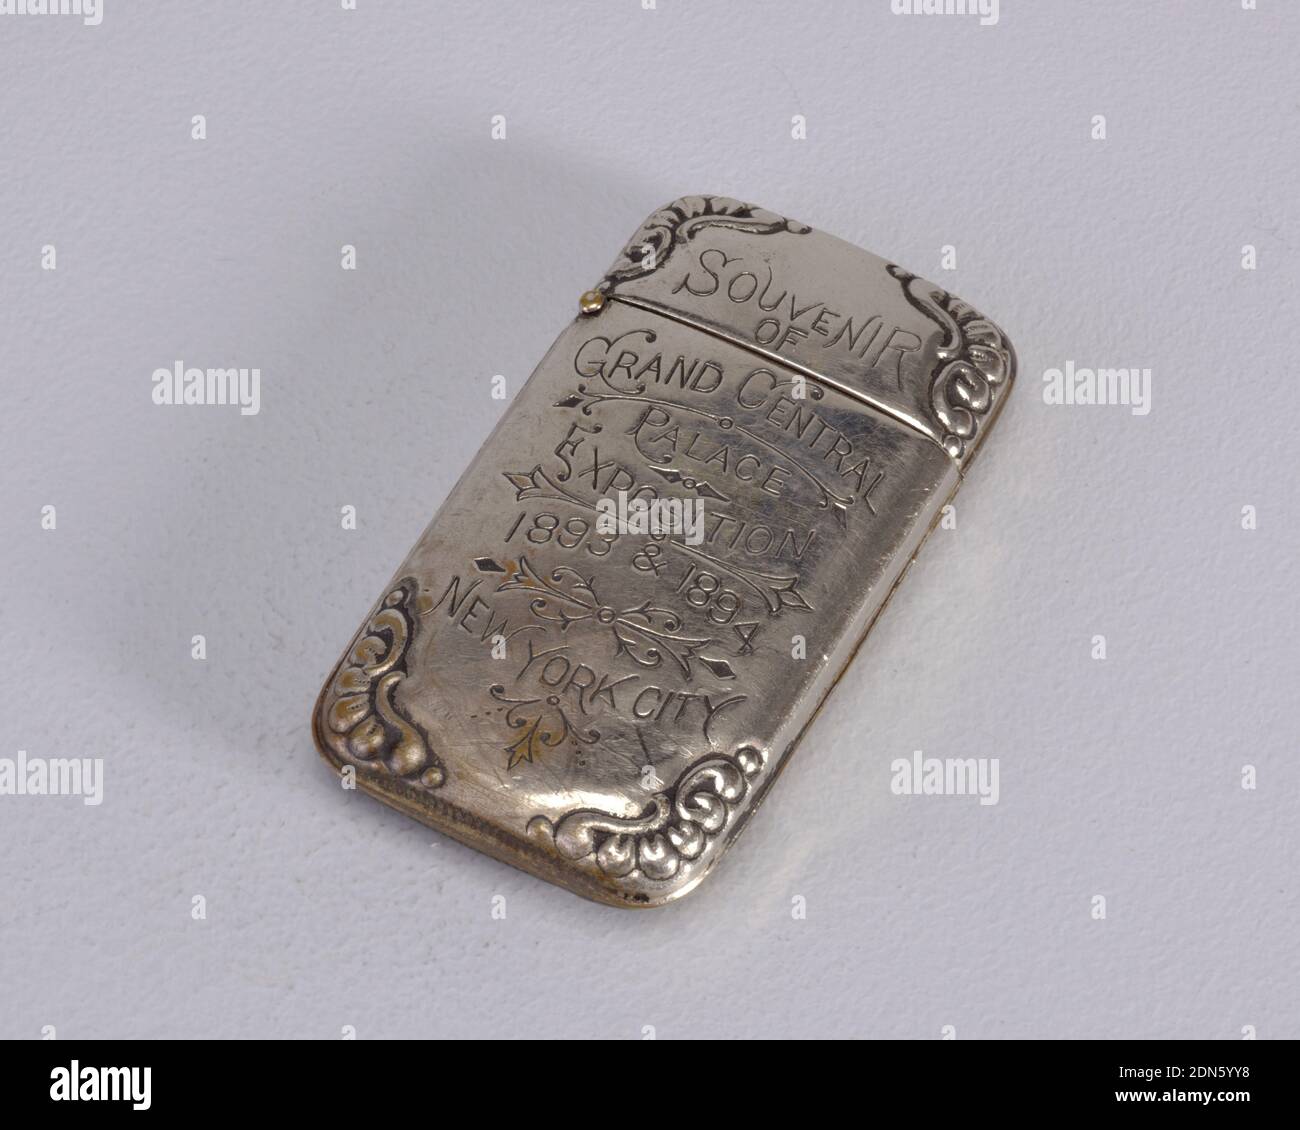 Coins de décoration de texte Banque de photographies et d'images à haute  résolution - Alamy